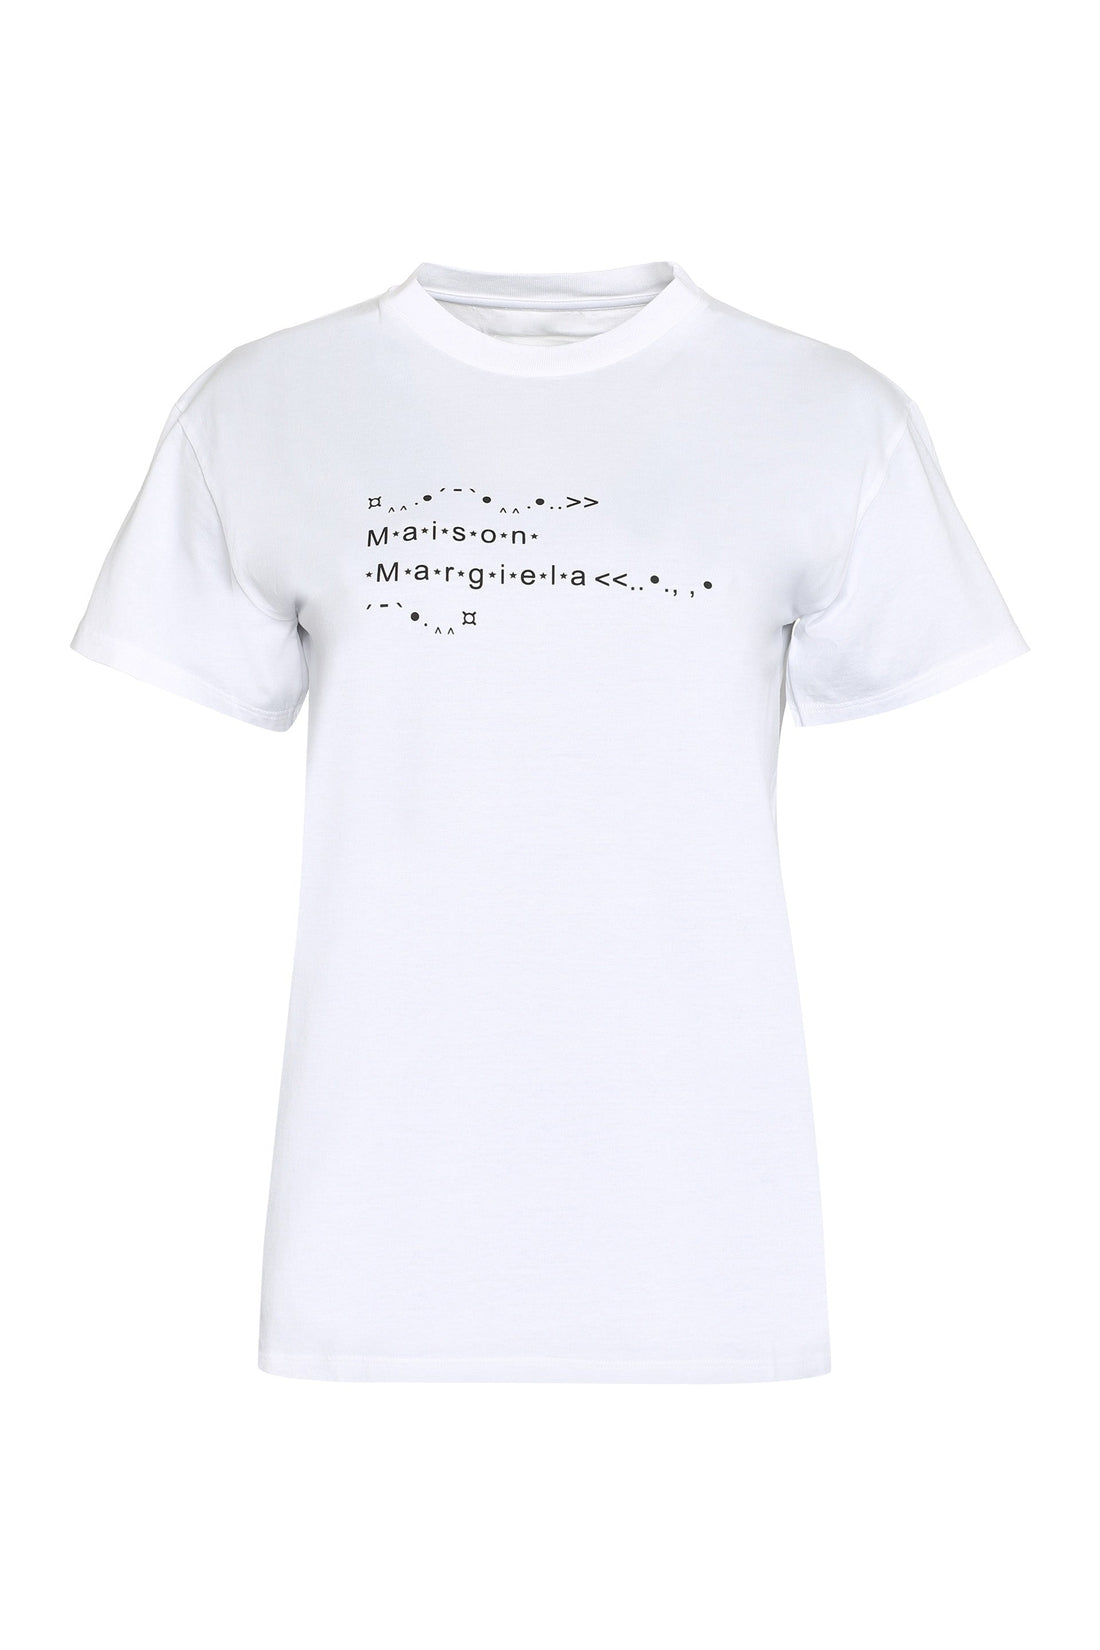 Maison Margiela-OUTLET-SALE-Printed cotton T-shirt-ARCHIVIST